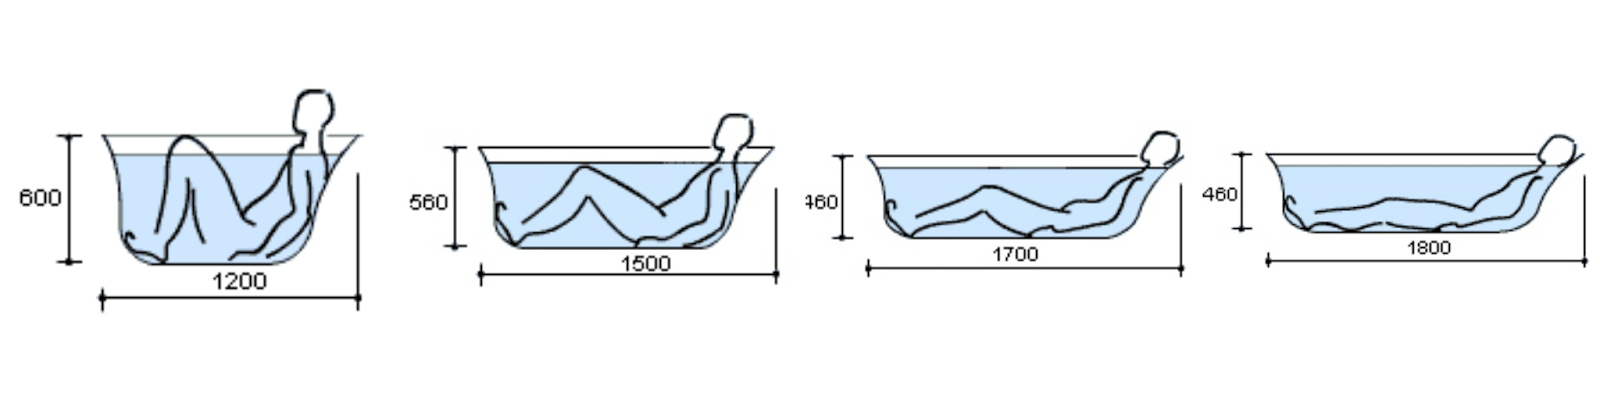 Размеры акриловых ванн в соответствии с планируемым использованием